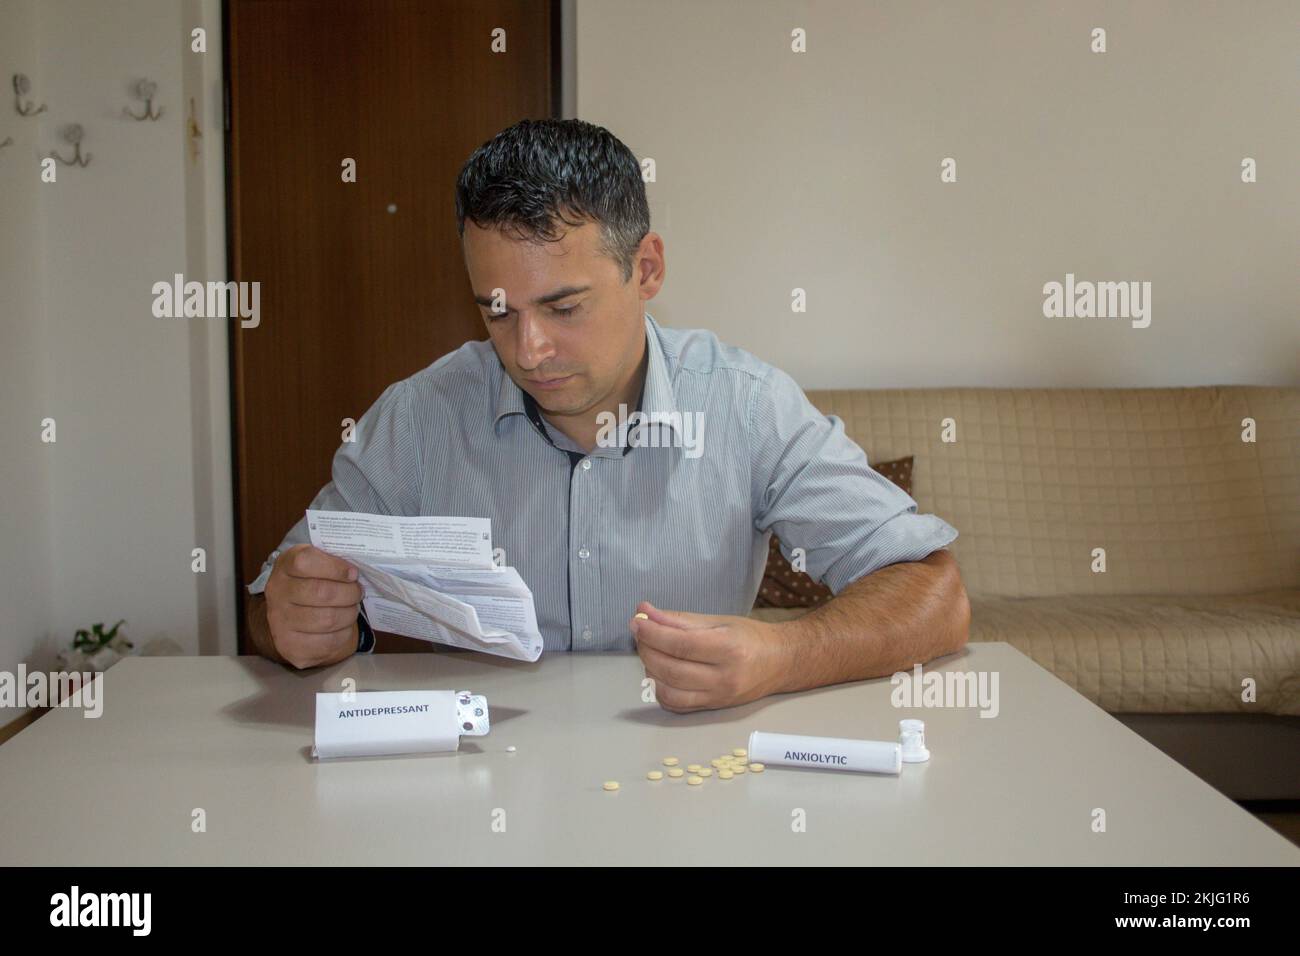 Homme assis en lisant la notice des médicaments avec des pilules anxiolytiques et antidépresseurs dispersées sur la table. Banque D'Images